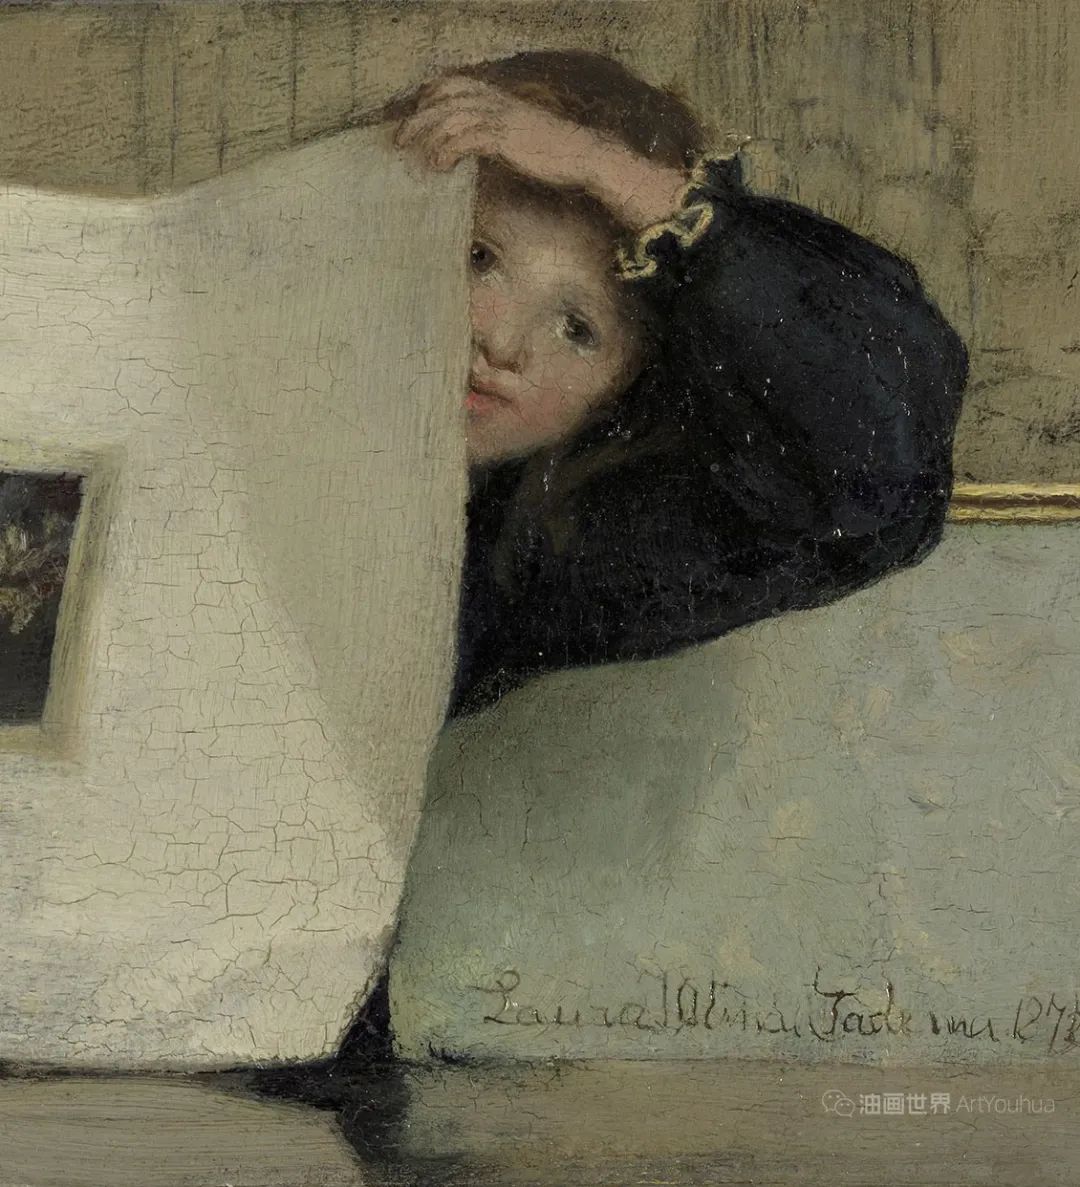 劳拉·塔德玛 | 深具情感表现力的英国画家